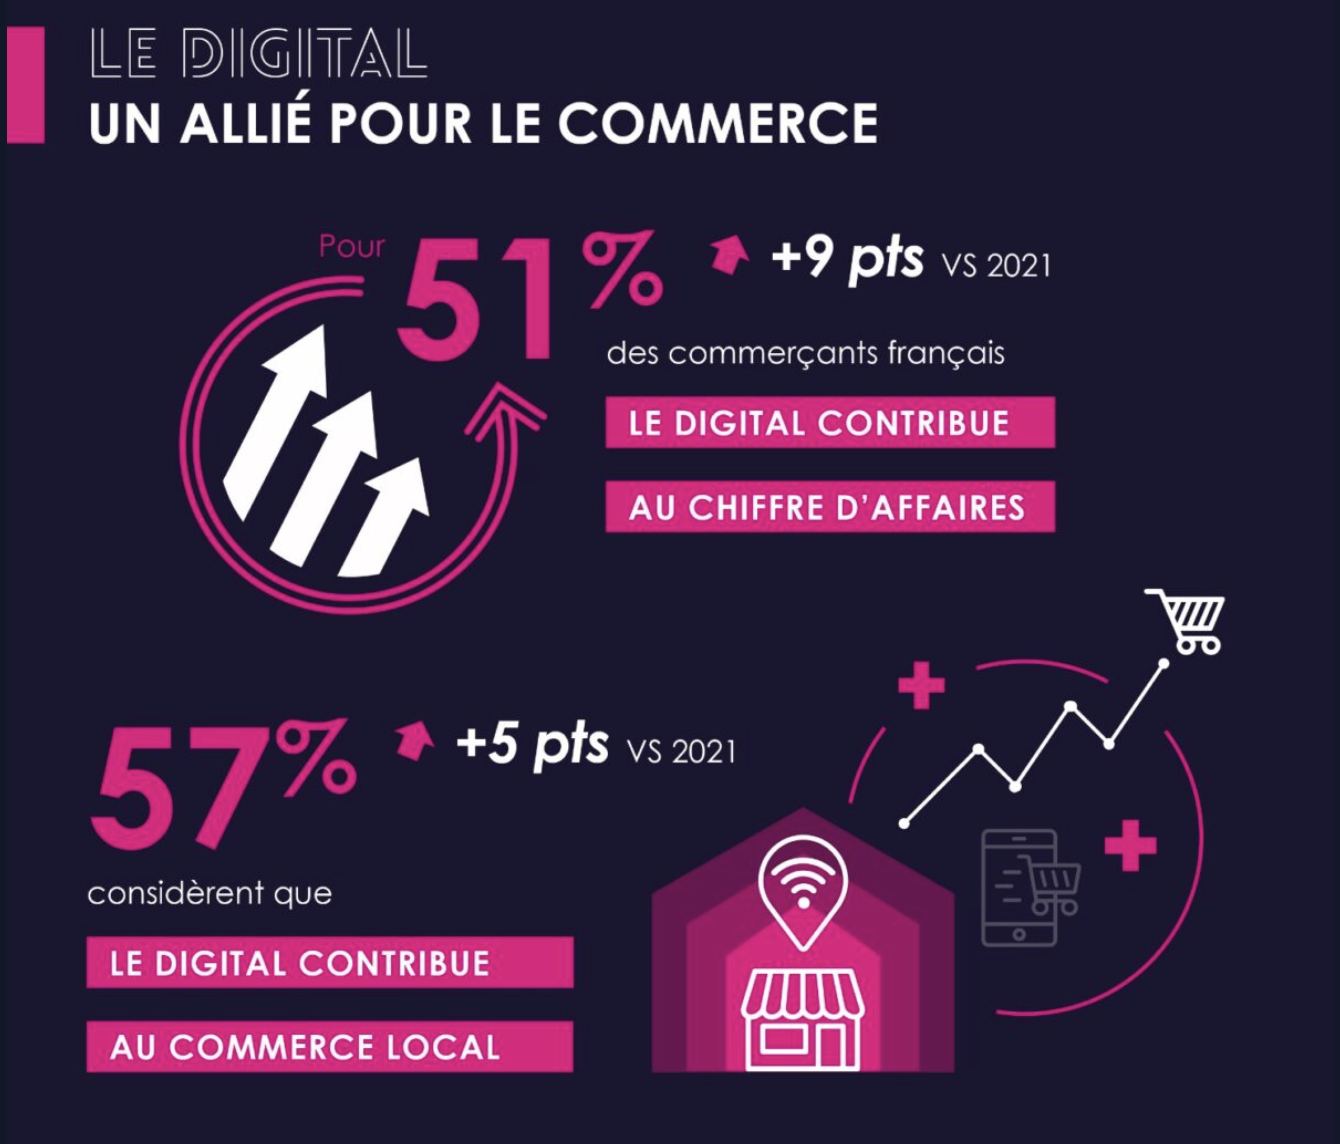 6e édition du baromètre ACSEL « Croissance & Digital » : le digital, un allié pérenne des commerçants français